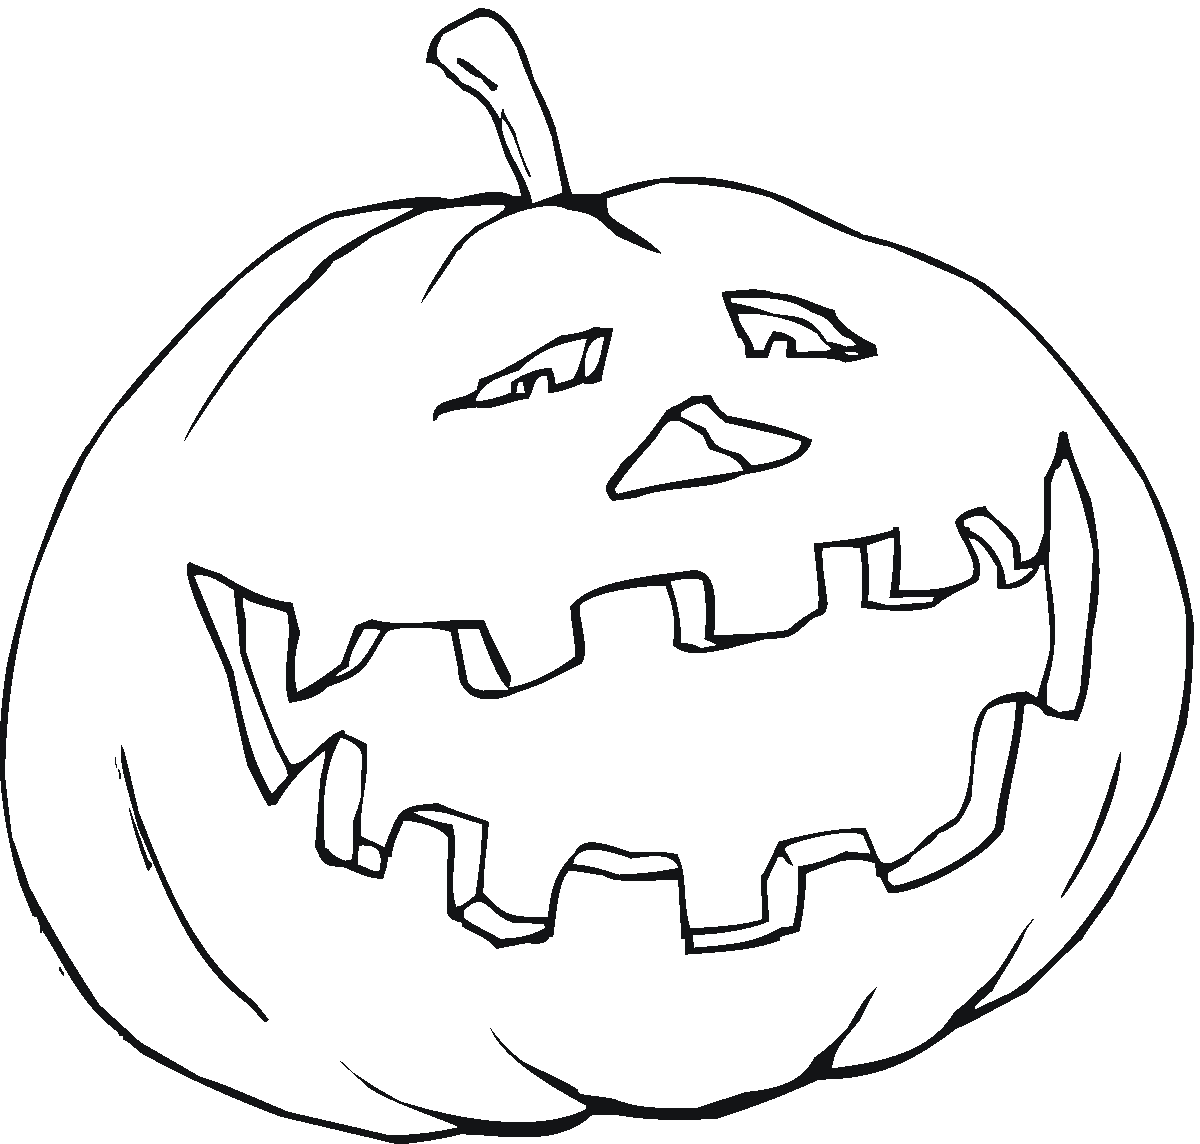 Pumpkin Line Drawing   Clipart Best